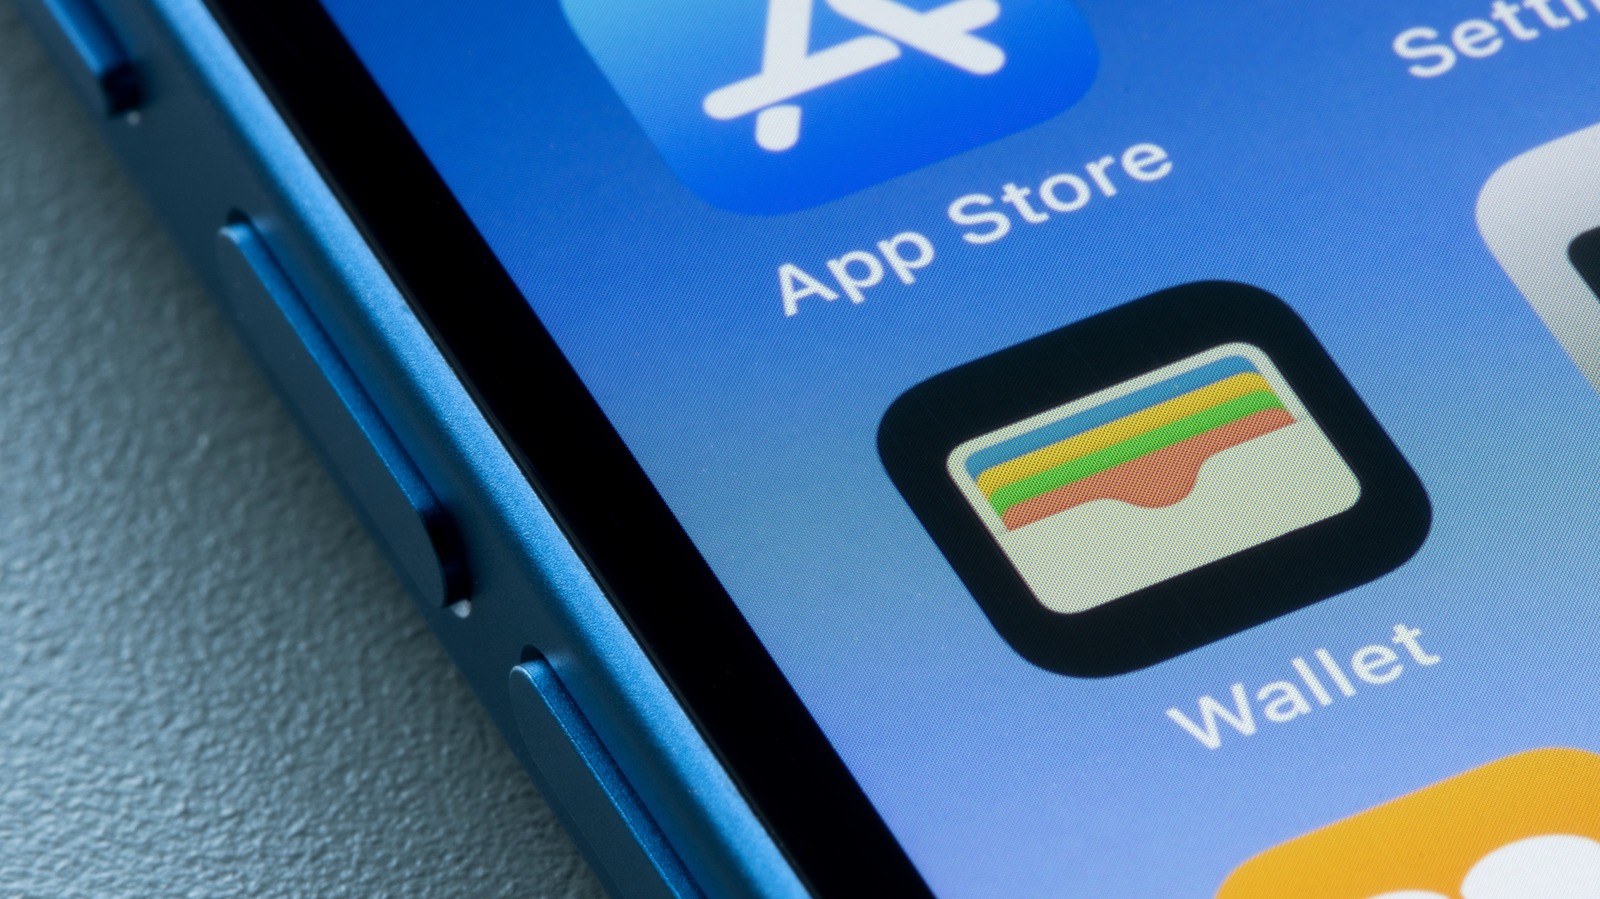 Quarta versão beta do iOS 15.4 agora aberta: o que há dentro?